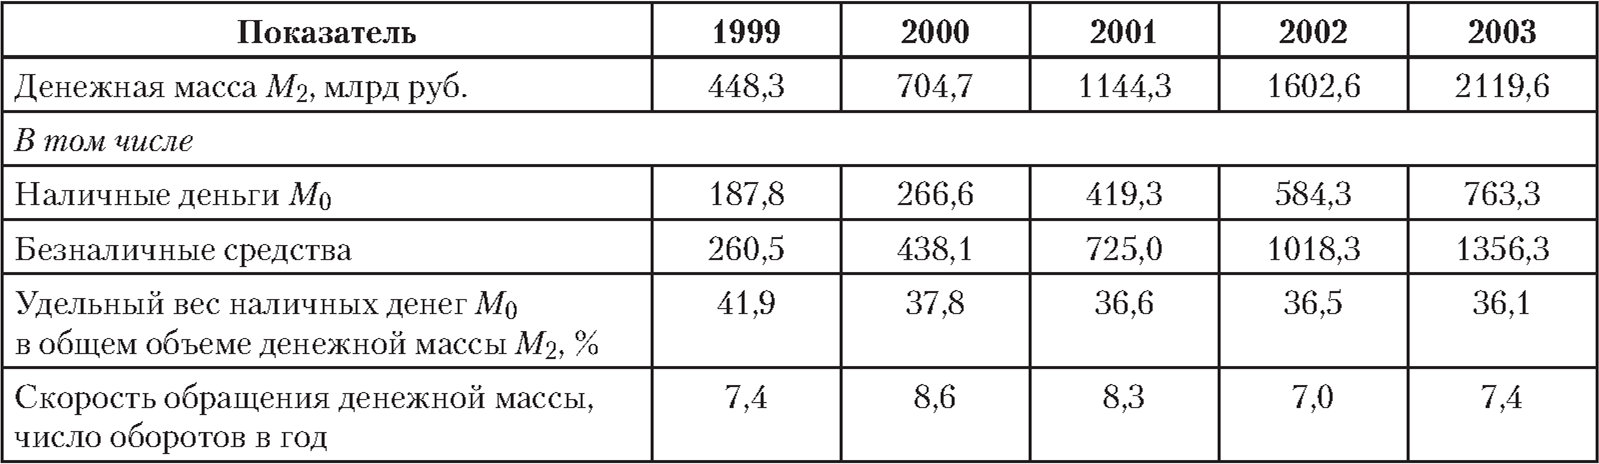 Основные показатели денежного обращения в России 1999 - 2003 гг.